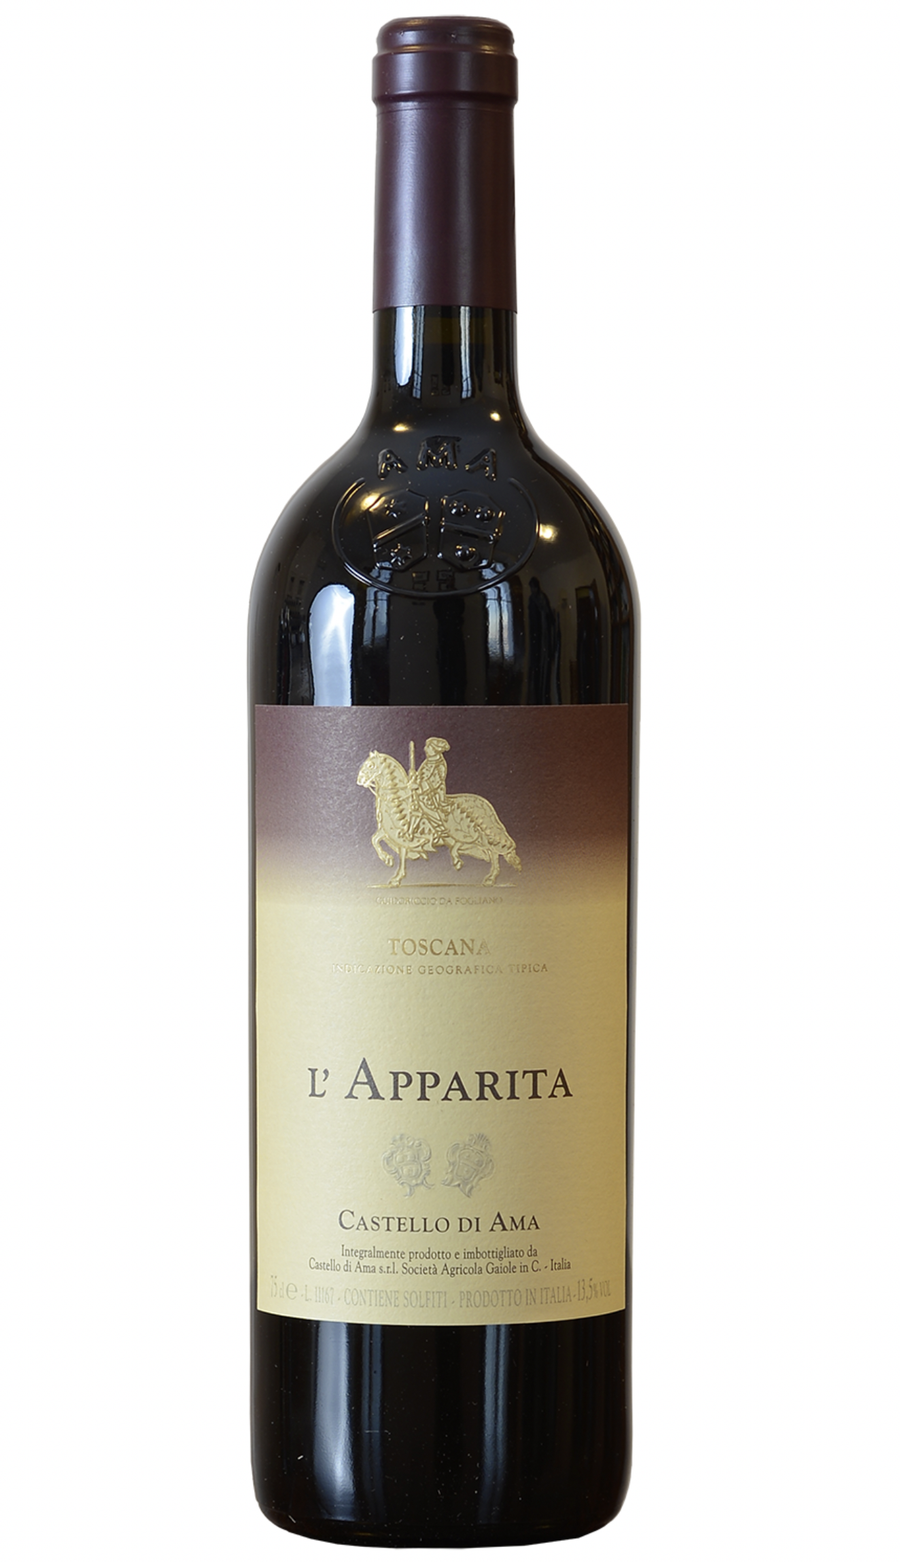 Castello di Ama L'Apparita 2007 - 2021 winery release